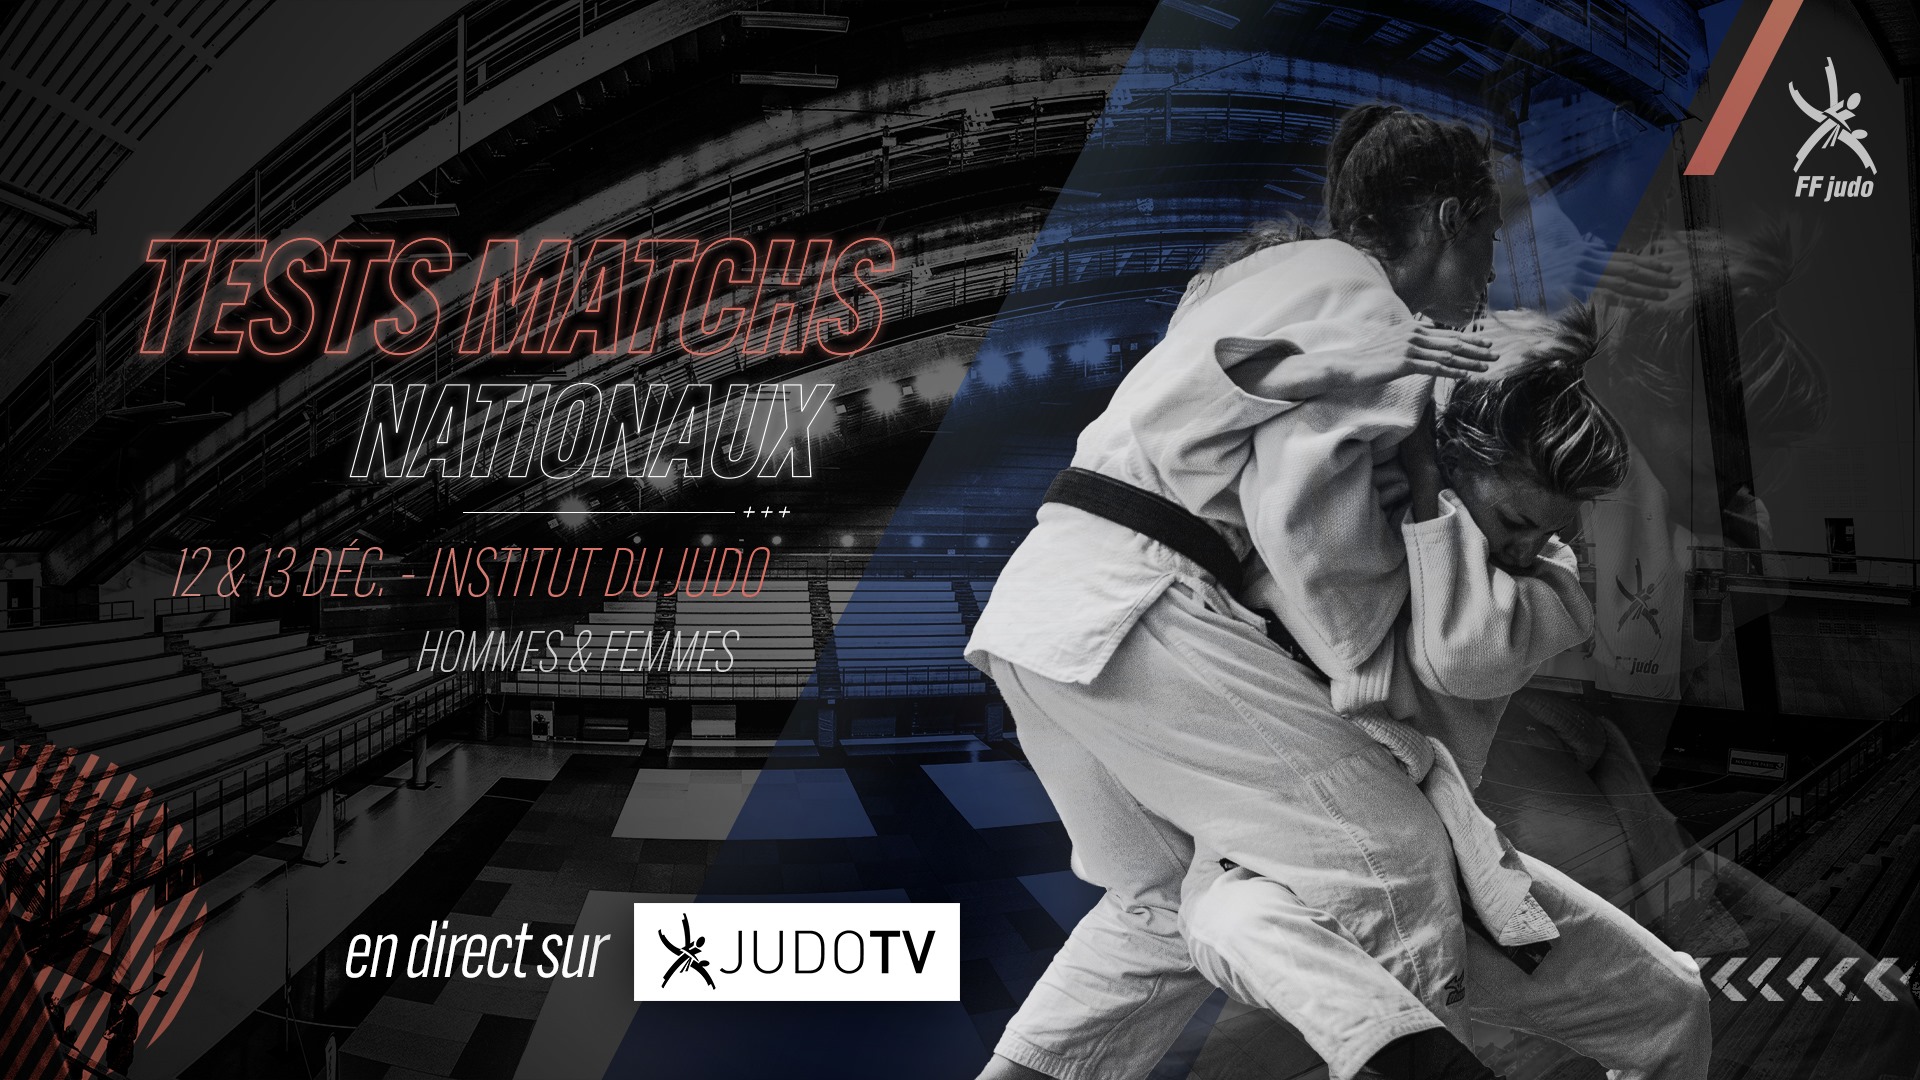 Tests match nationaux à l’Institut du judo